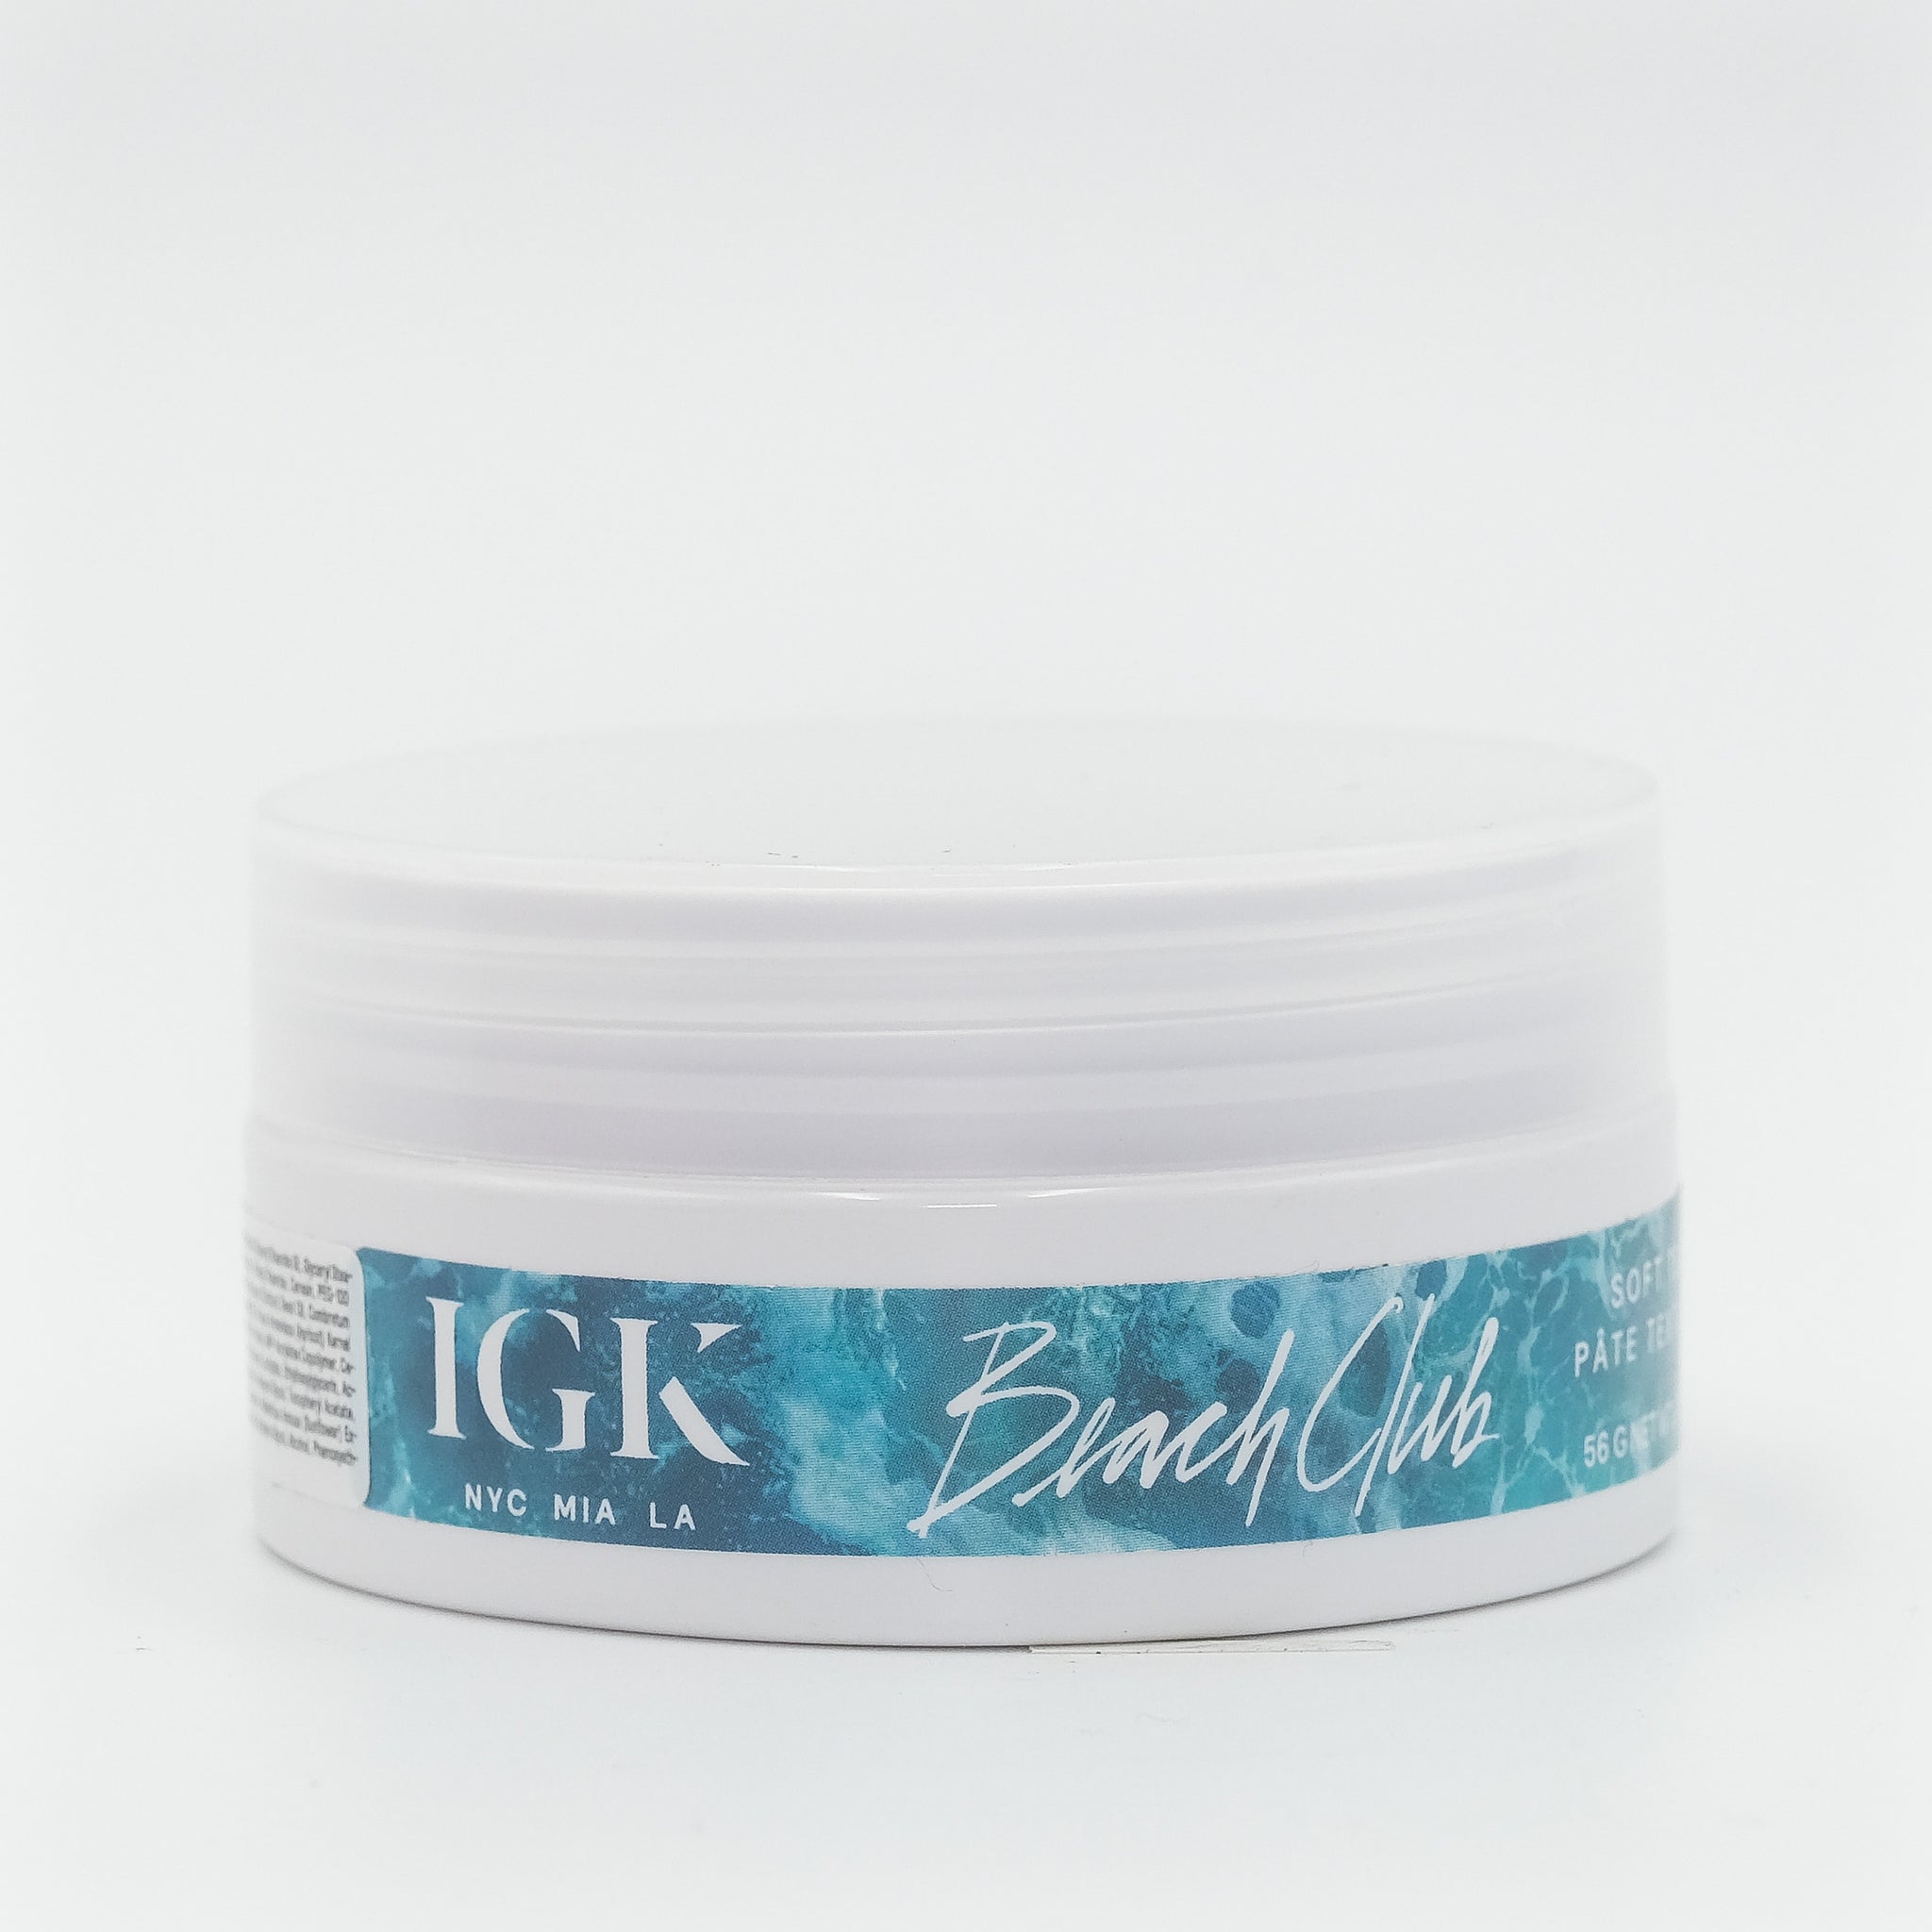 IGK Beach Curls Soft Texture Paste 2.0 oz